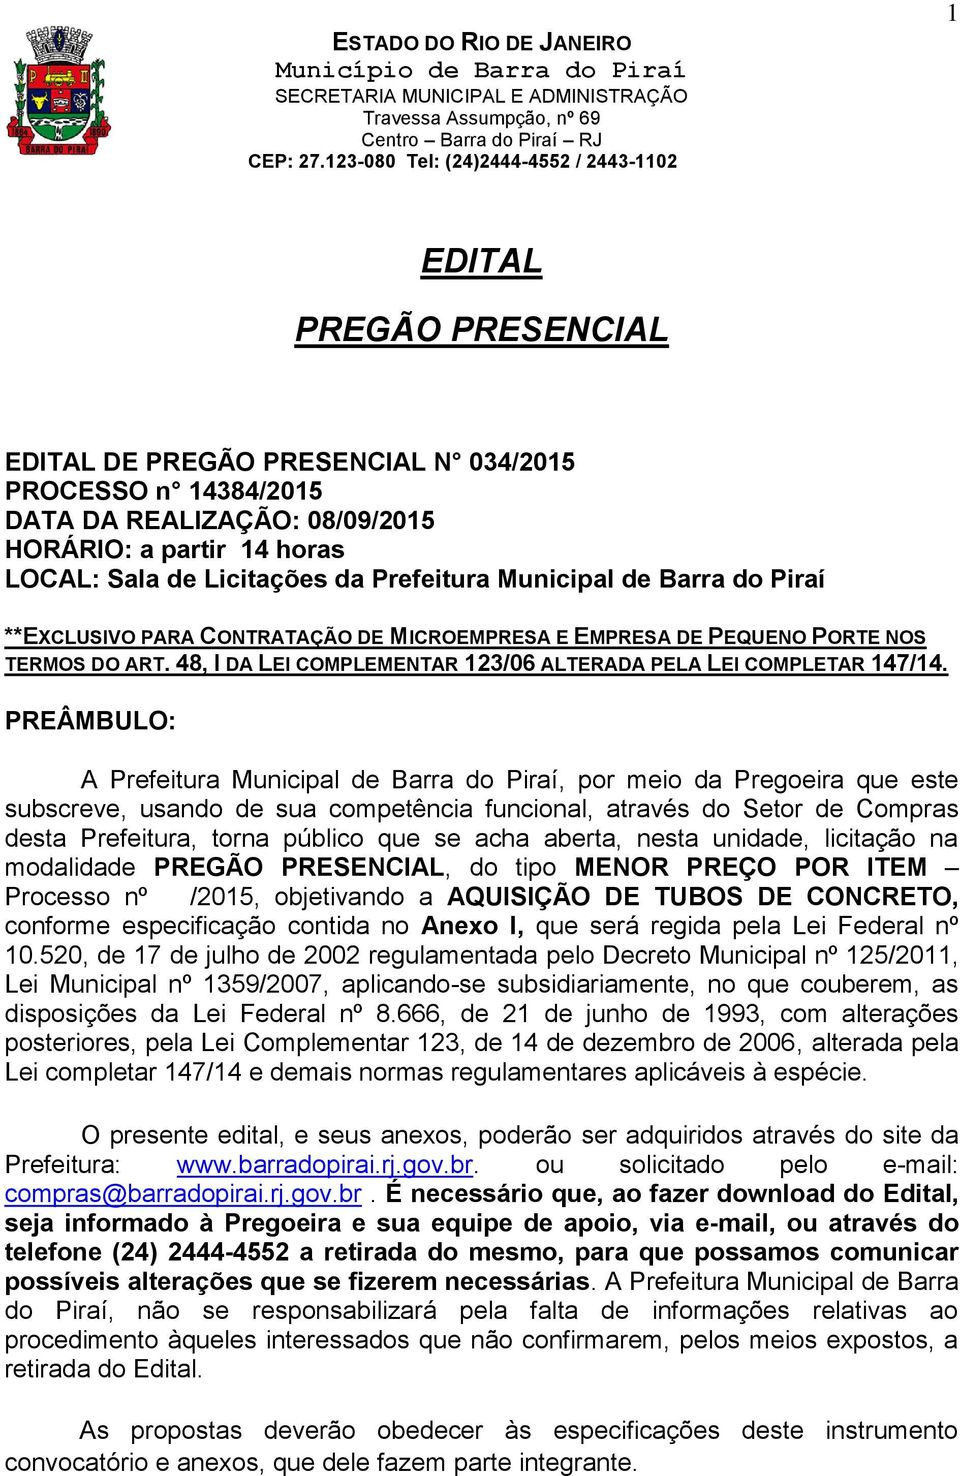 PREÂMBULO: A Prefeitura Municipal de Barra do Piraí, por meio da Pregoeira que este subscreve, usando de sua competência funcional, através do Setor de Compras desta Prefeitura, torna público que se